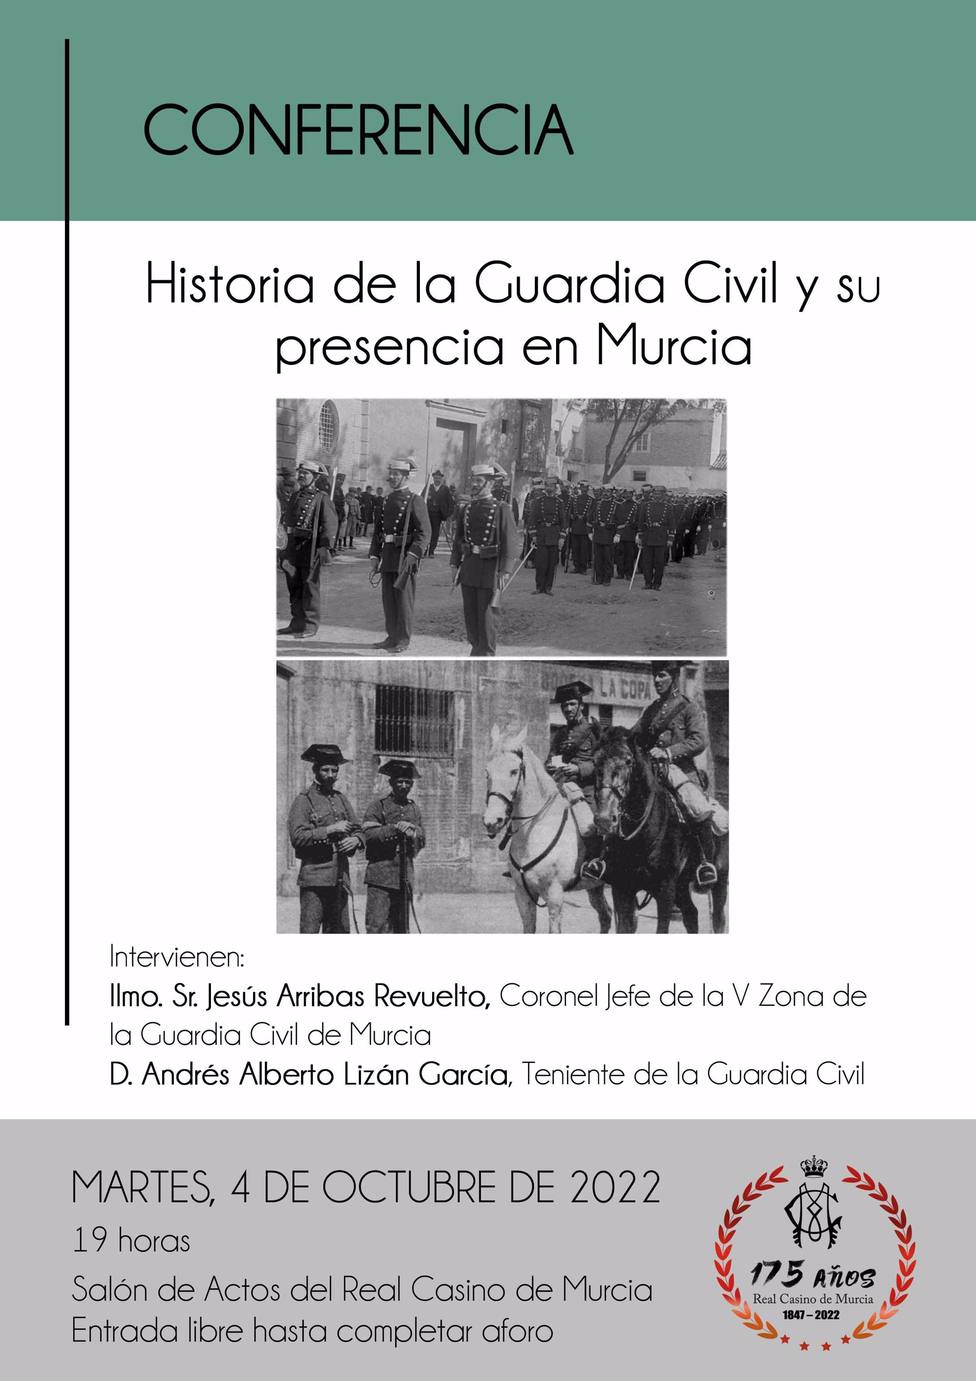 La Guardia Civil ofrece una conferencia sobre su historia y presencia en la RegiÃ³n